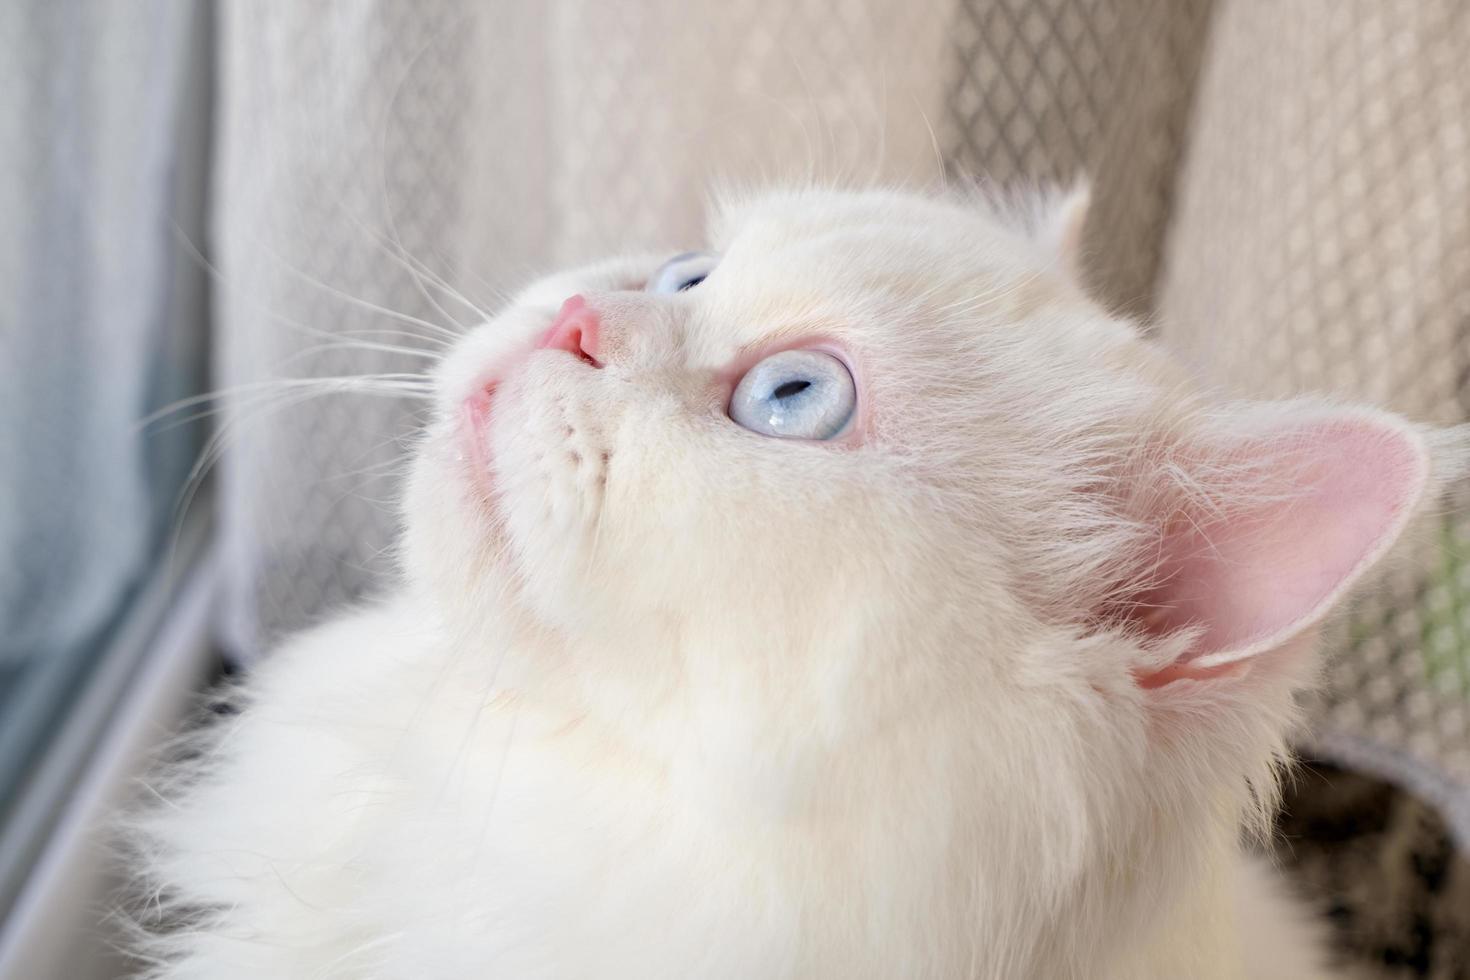 cara de muñeca persa chinchilla gato blanco. animal de compañía lindo y esponjoso con ojos azules foto